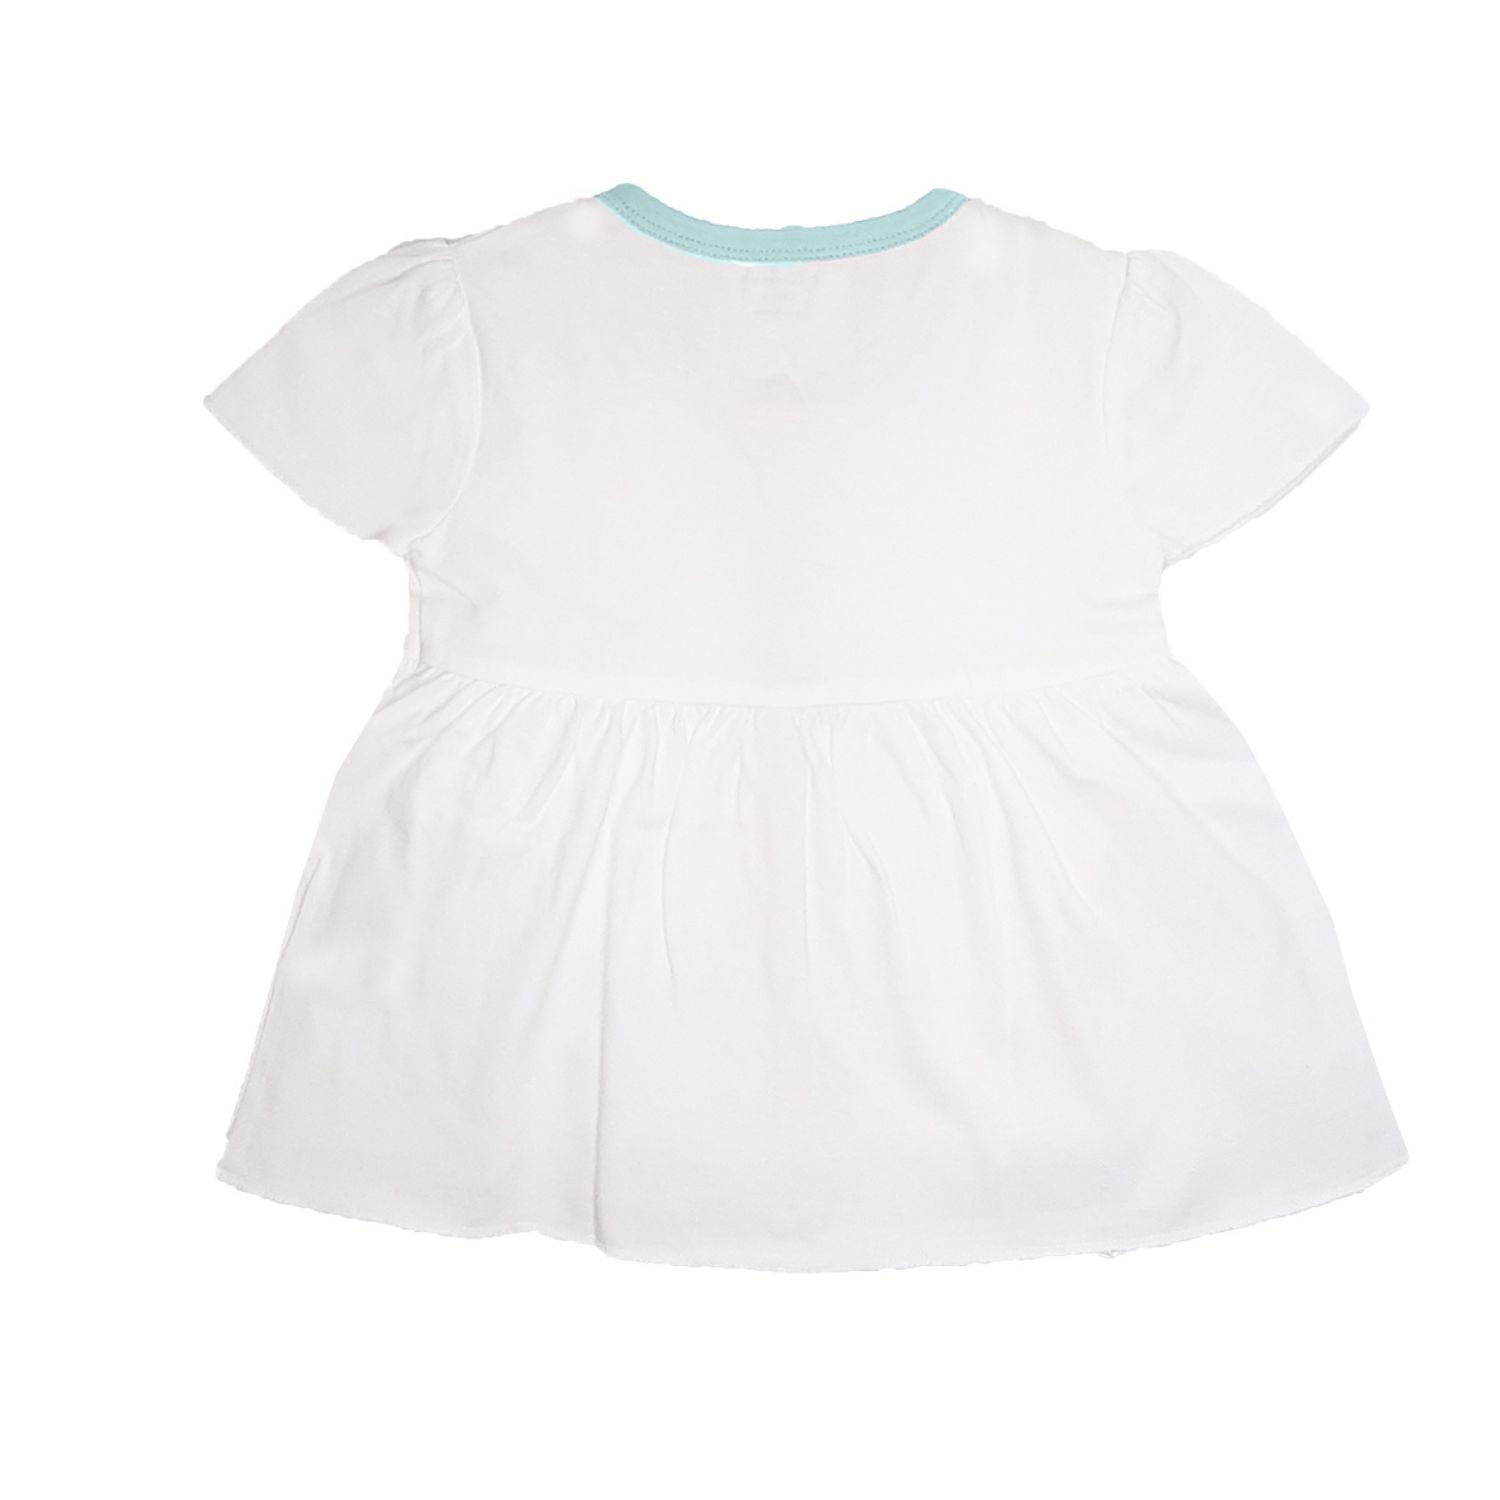 My Milestones T-shirt Half Sleeves Girls White/Aqua & White/Peach - 2 Pc Pack